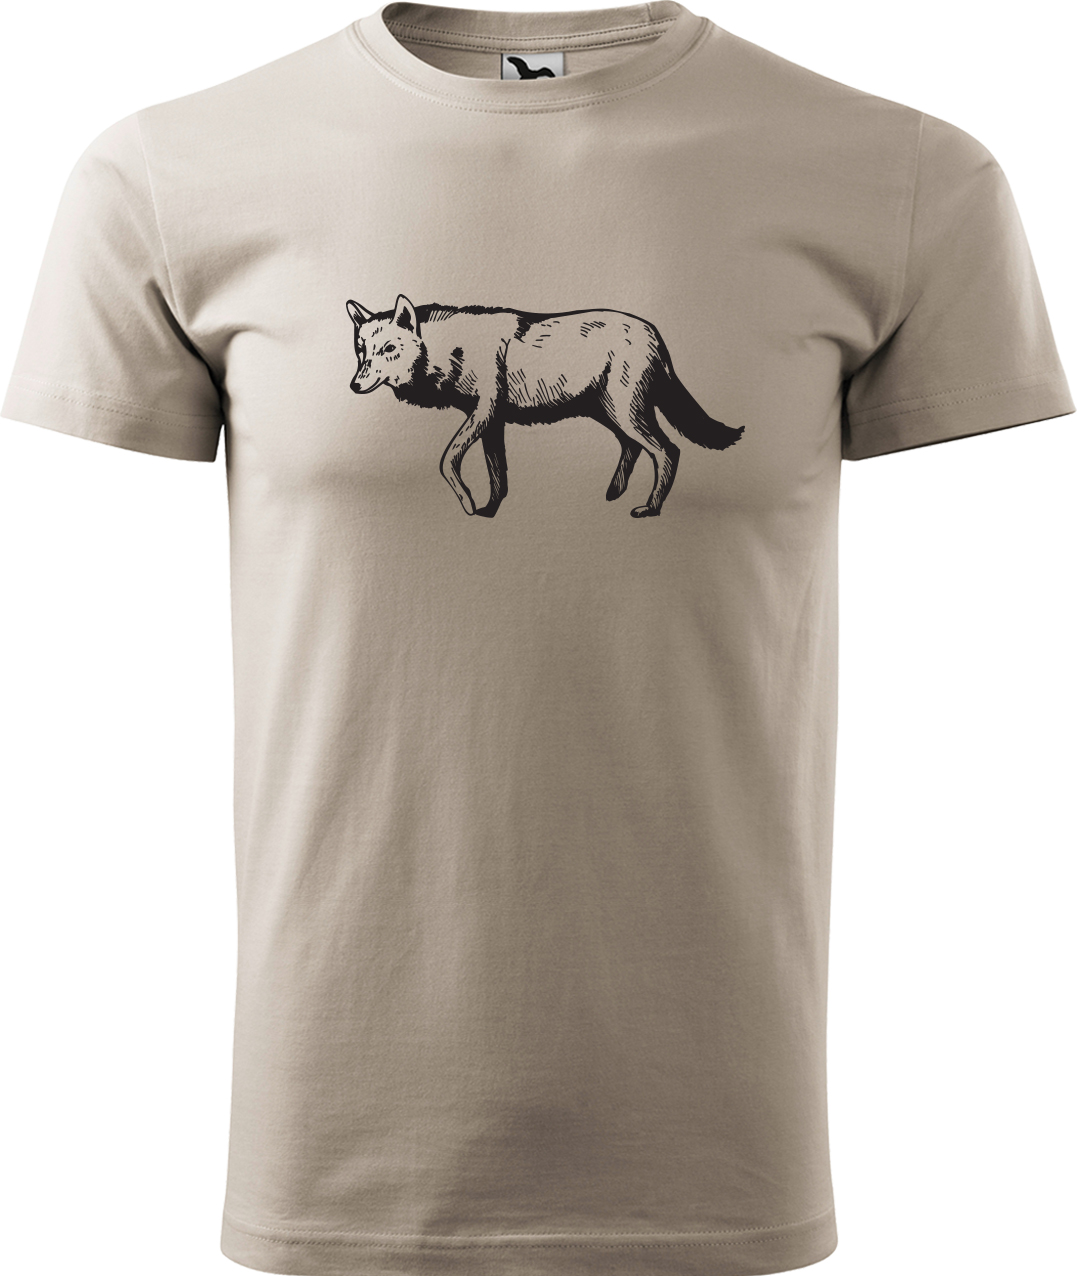 Pánské tričko s vlkem - Vlk Velikost: XL, Barva: Ledově šedá (51), Střih: pánský